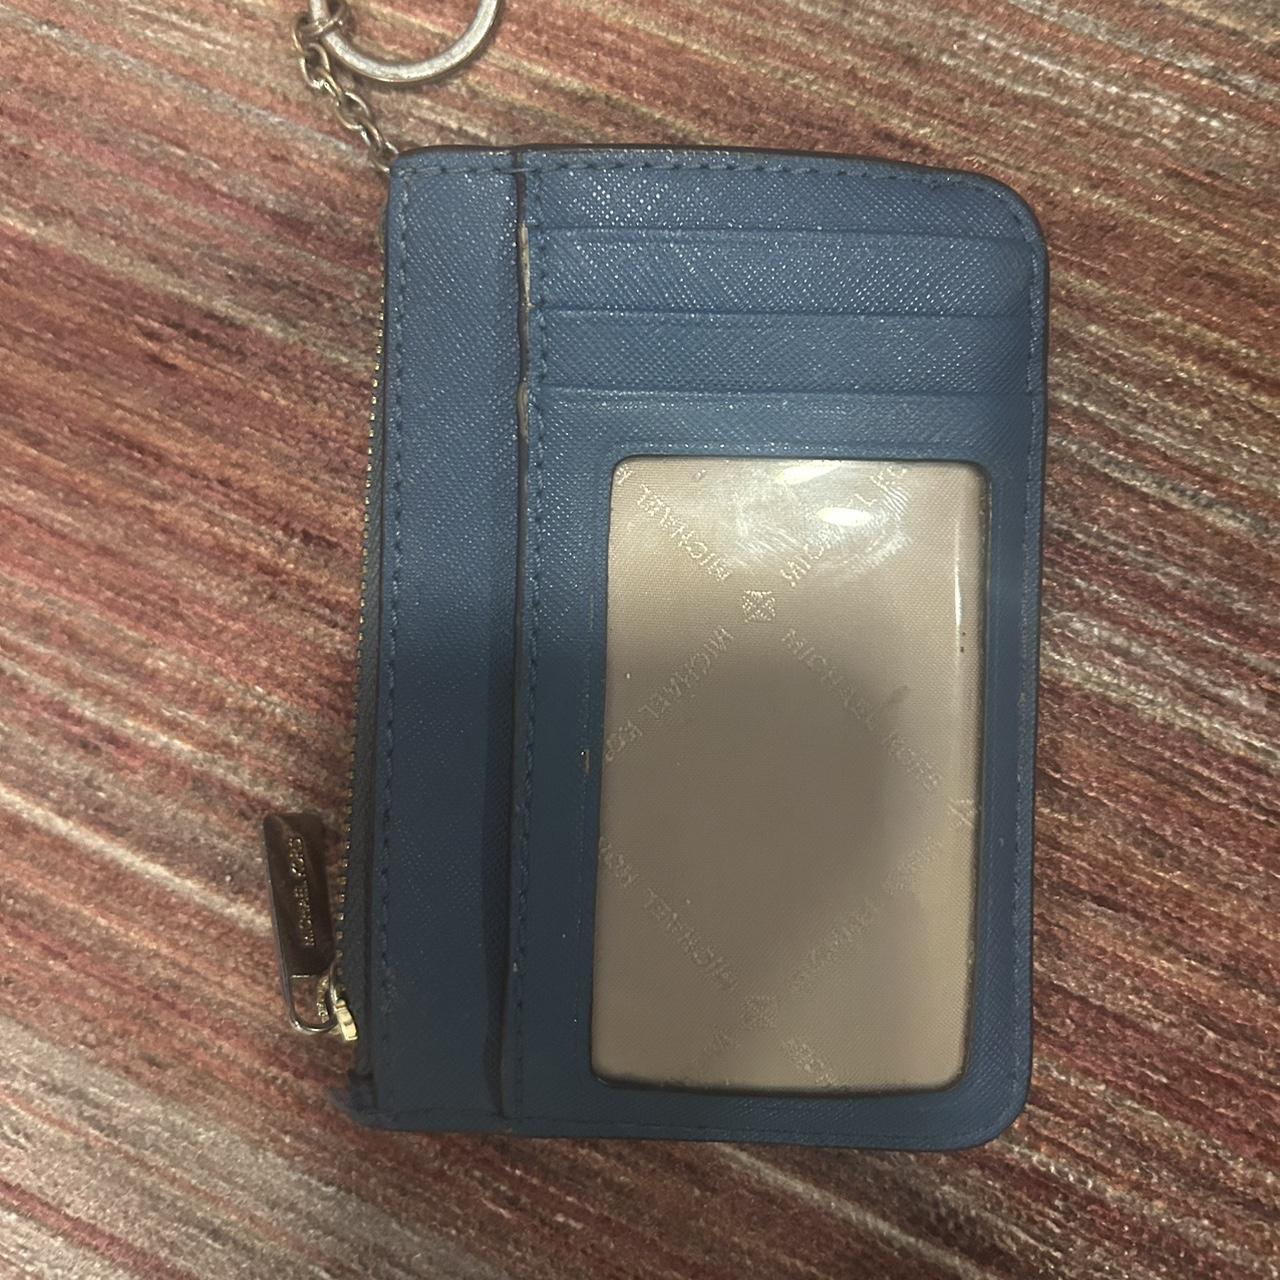 Michael Kors Zip Around Wallet  Zip around wallet Michael kors coin purse  Black leather wallet